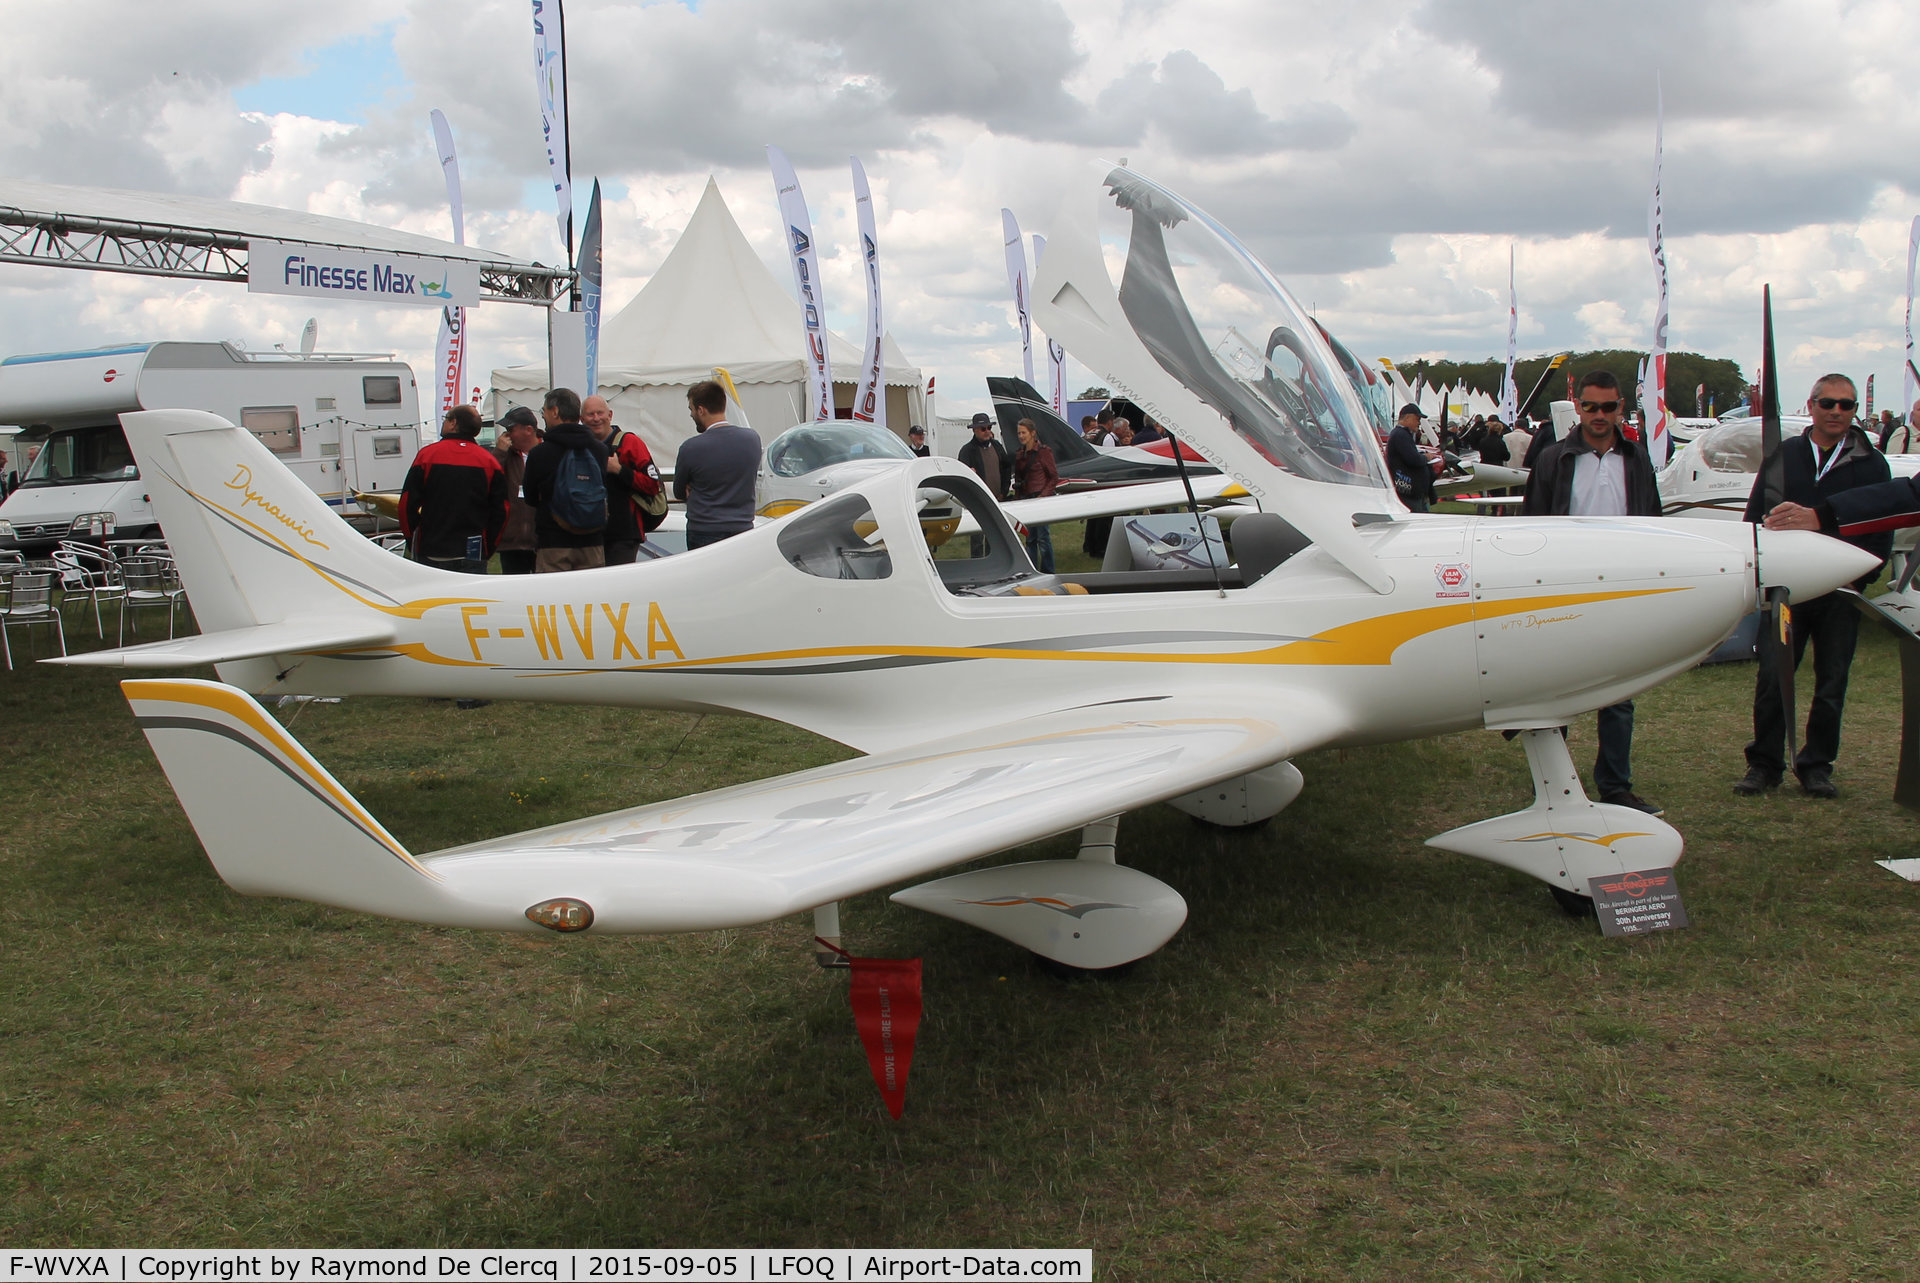 F-WVXA, Aerospool WT9 Dynamic C/N DY436, ULM salon Blois.